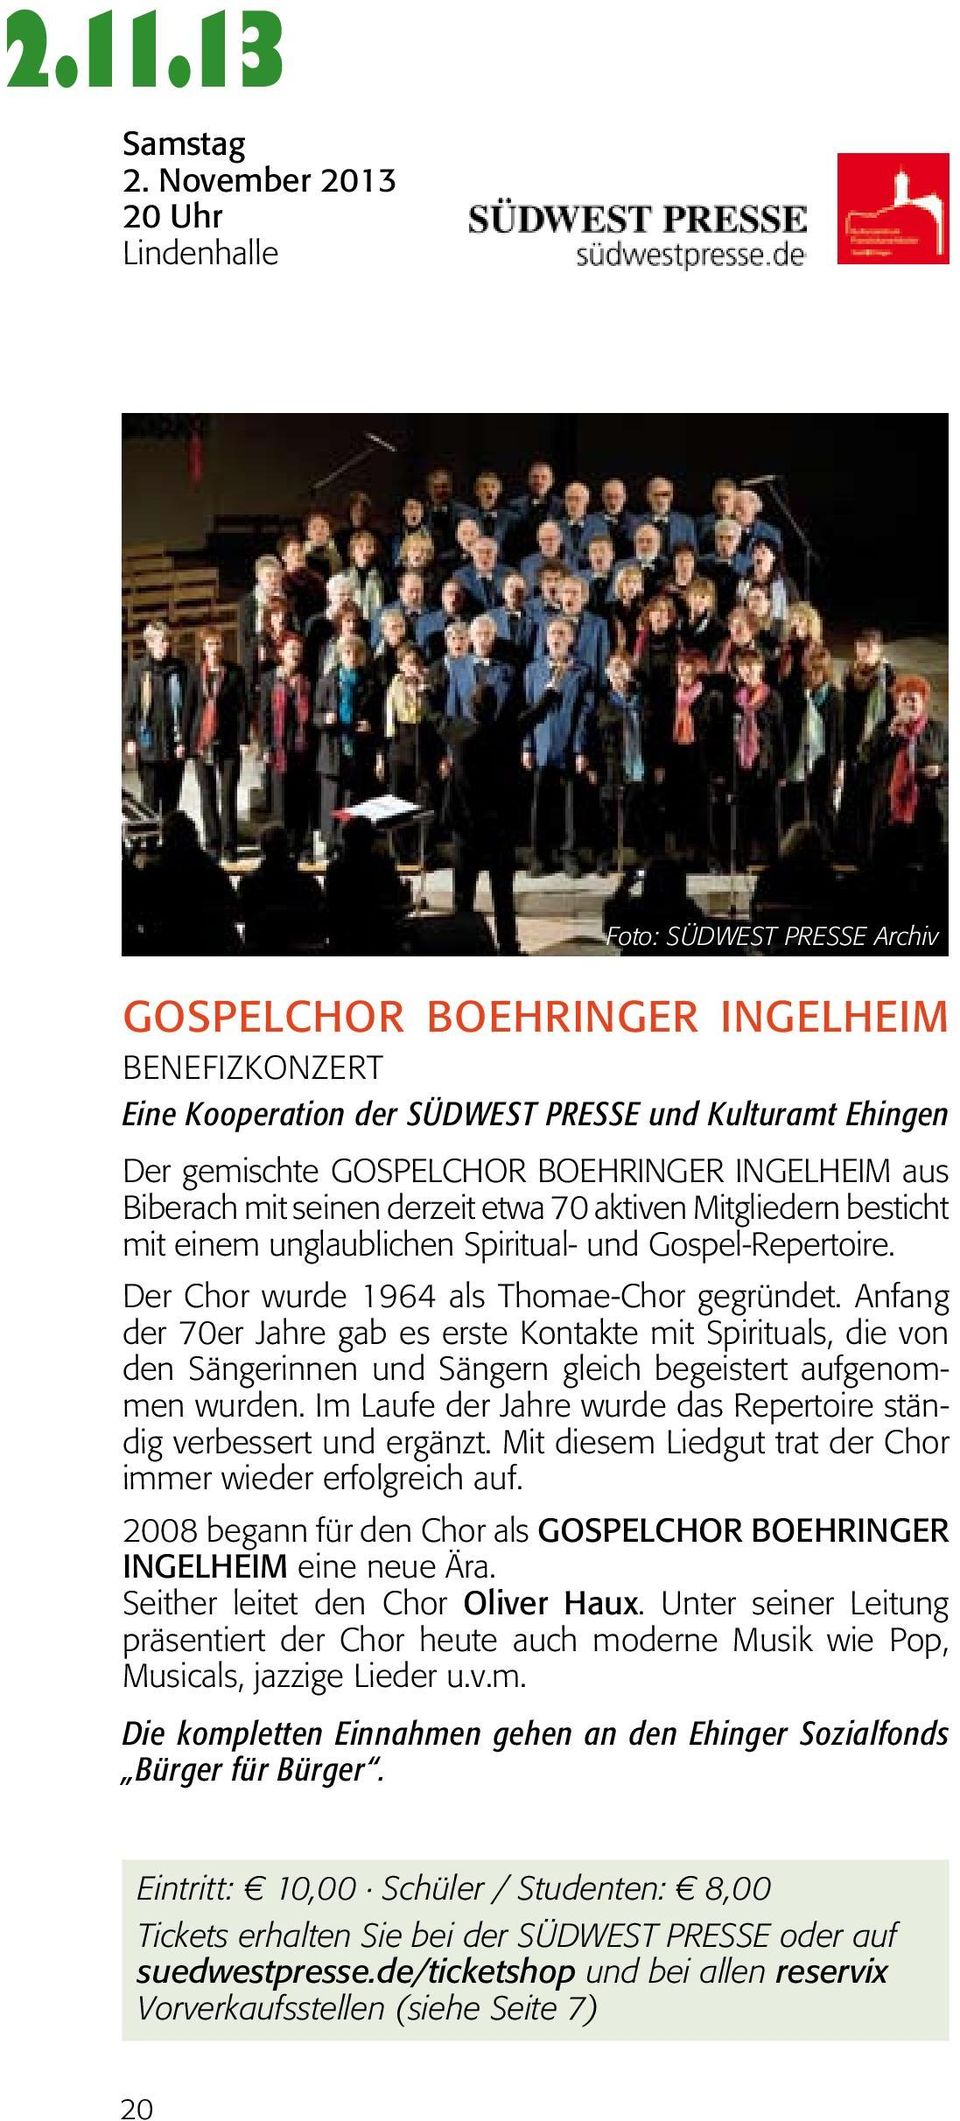 Boehringer Ingelheim aus Biberach mit seinen derzeit etwa 70 aktiven Mitgliedern besticht mit einem unglaublichen Spiritual- und Gospel-Repertoire. Der Chor wurde 1964 als Thomae-Chor gegründet.